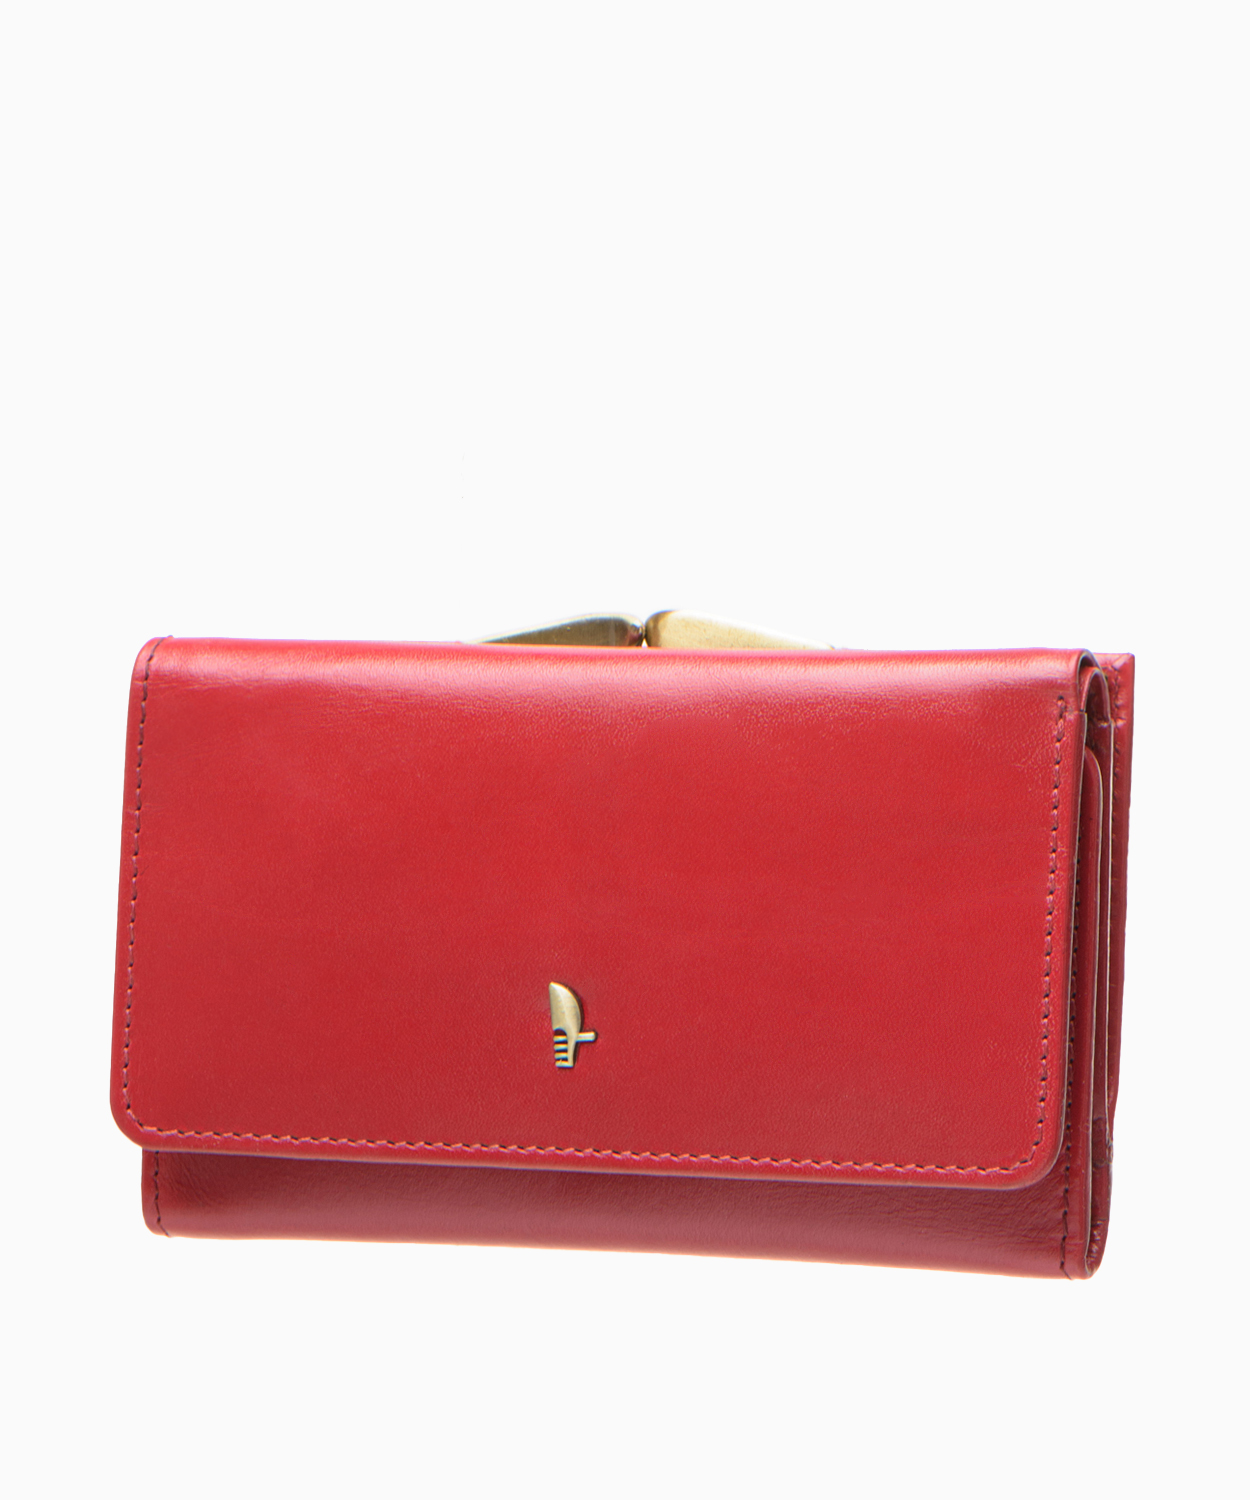 PUCCINI Duży portfel damski czerwony skórzany z kieszenią na bigiel i zabezpieczeniem RFID